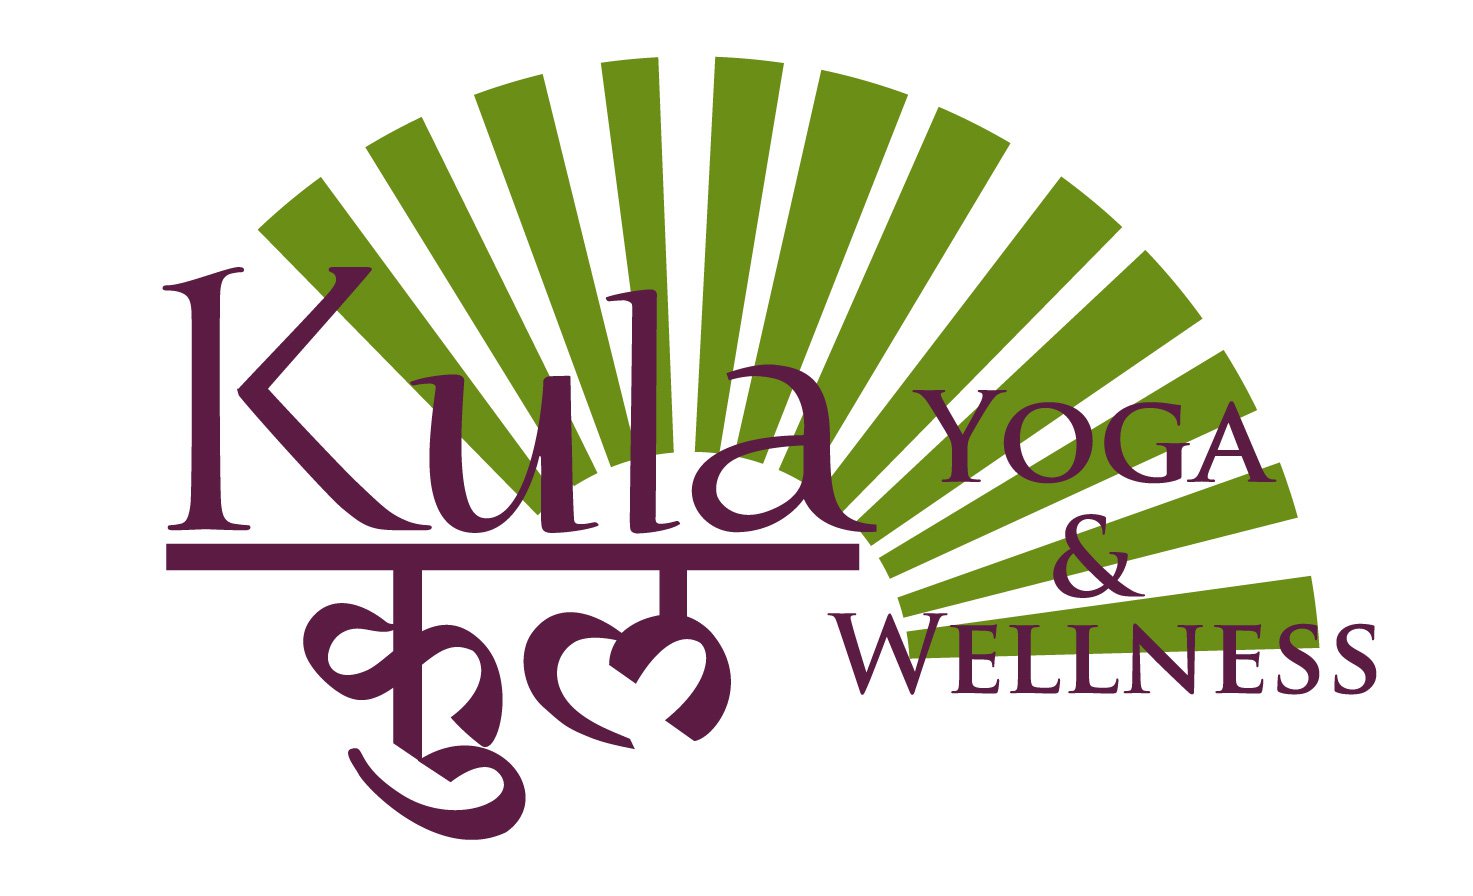 Kula Yoga And Wellness Image